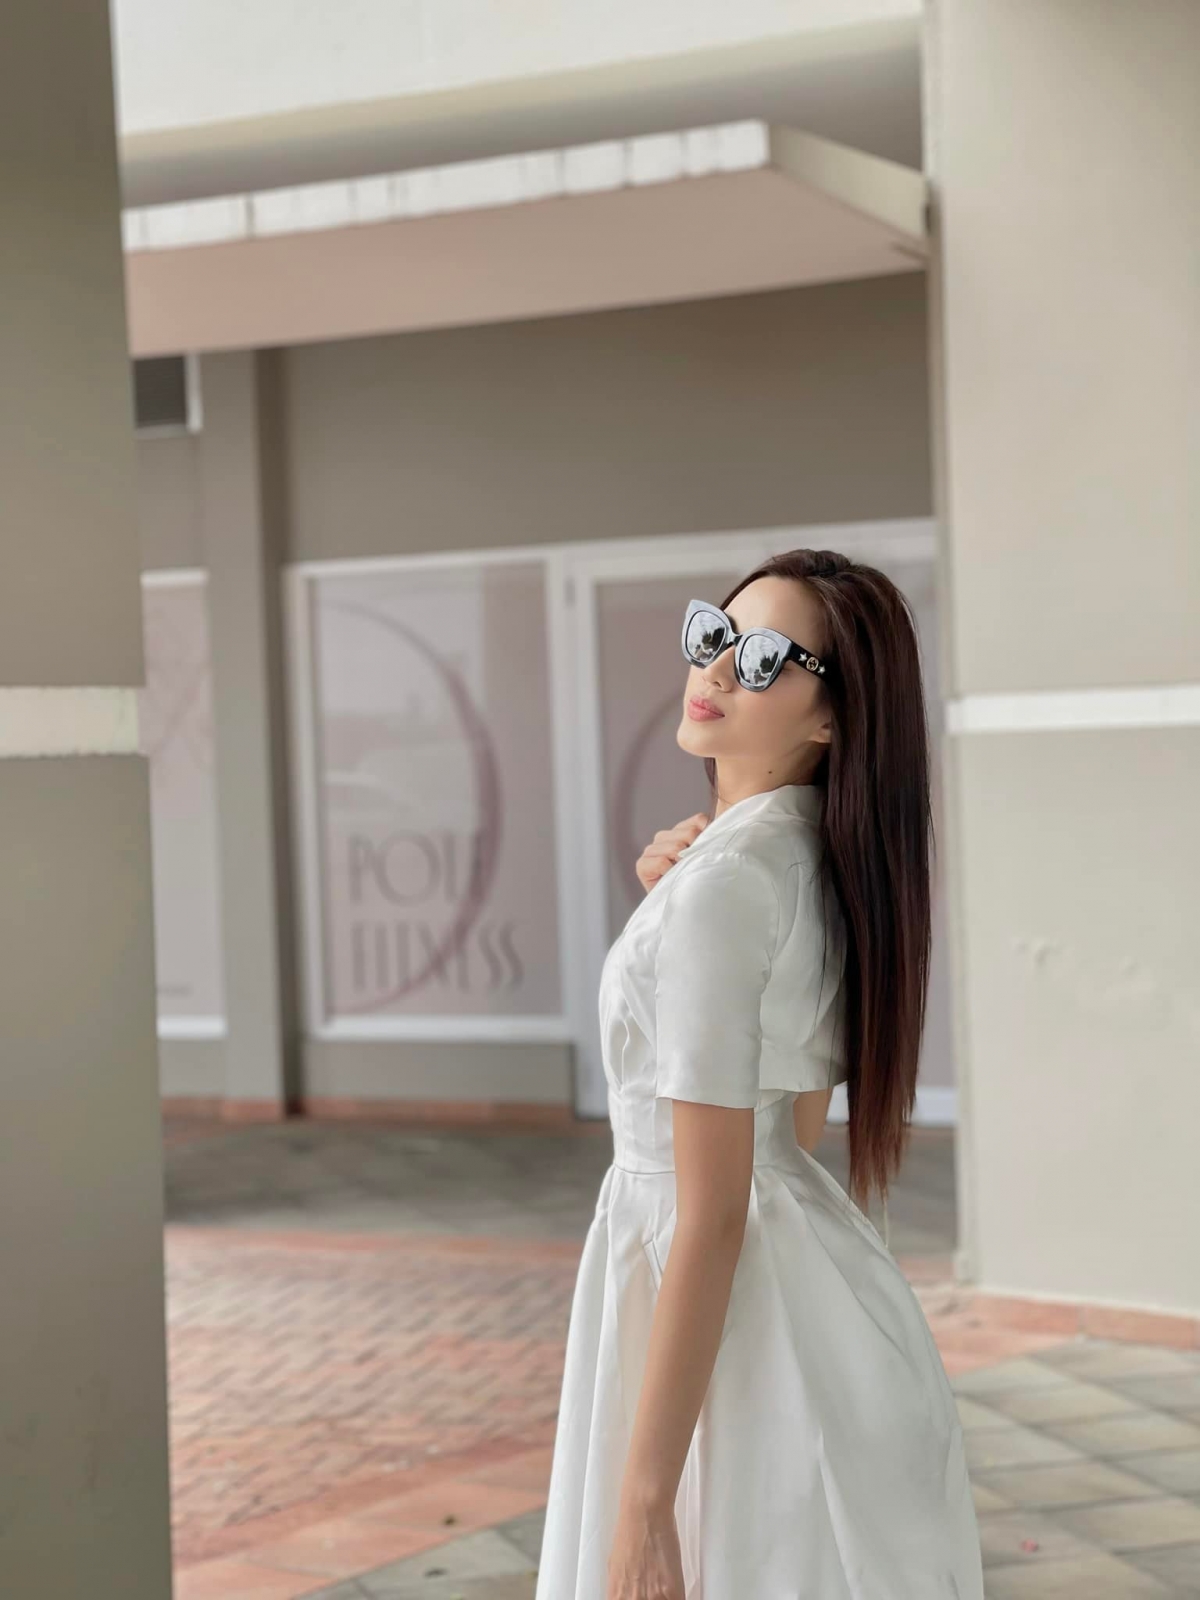 Hoa hậu Đỗ Thị Hà hóa nàng thơ yêu kiều với sắc trắng tinh khôi trước khi về nước - Ảnh 3.